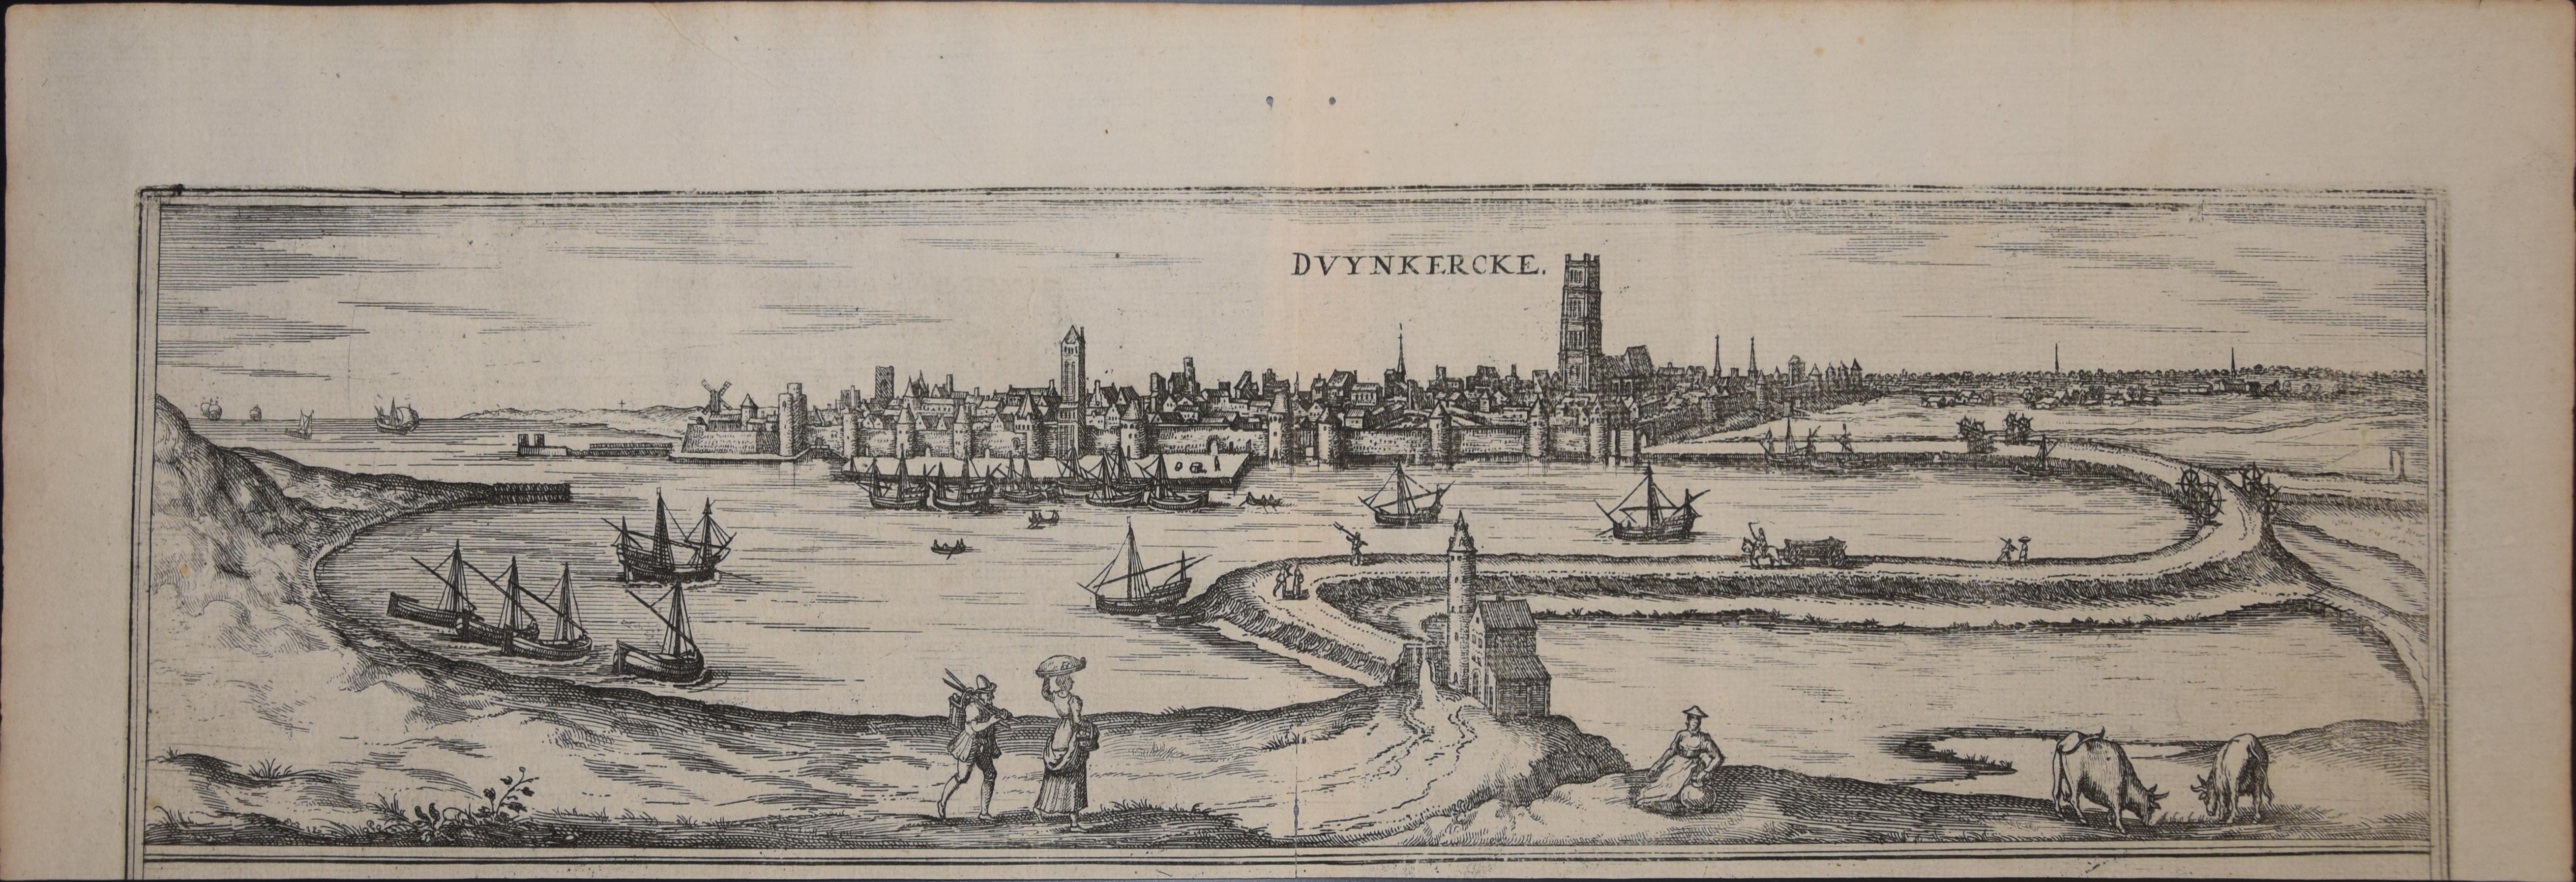 Dunkirk, Map from "Civitates Orbis Terrarum" - by F. Hogenberg - 1572/1617